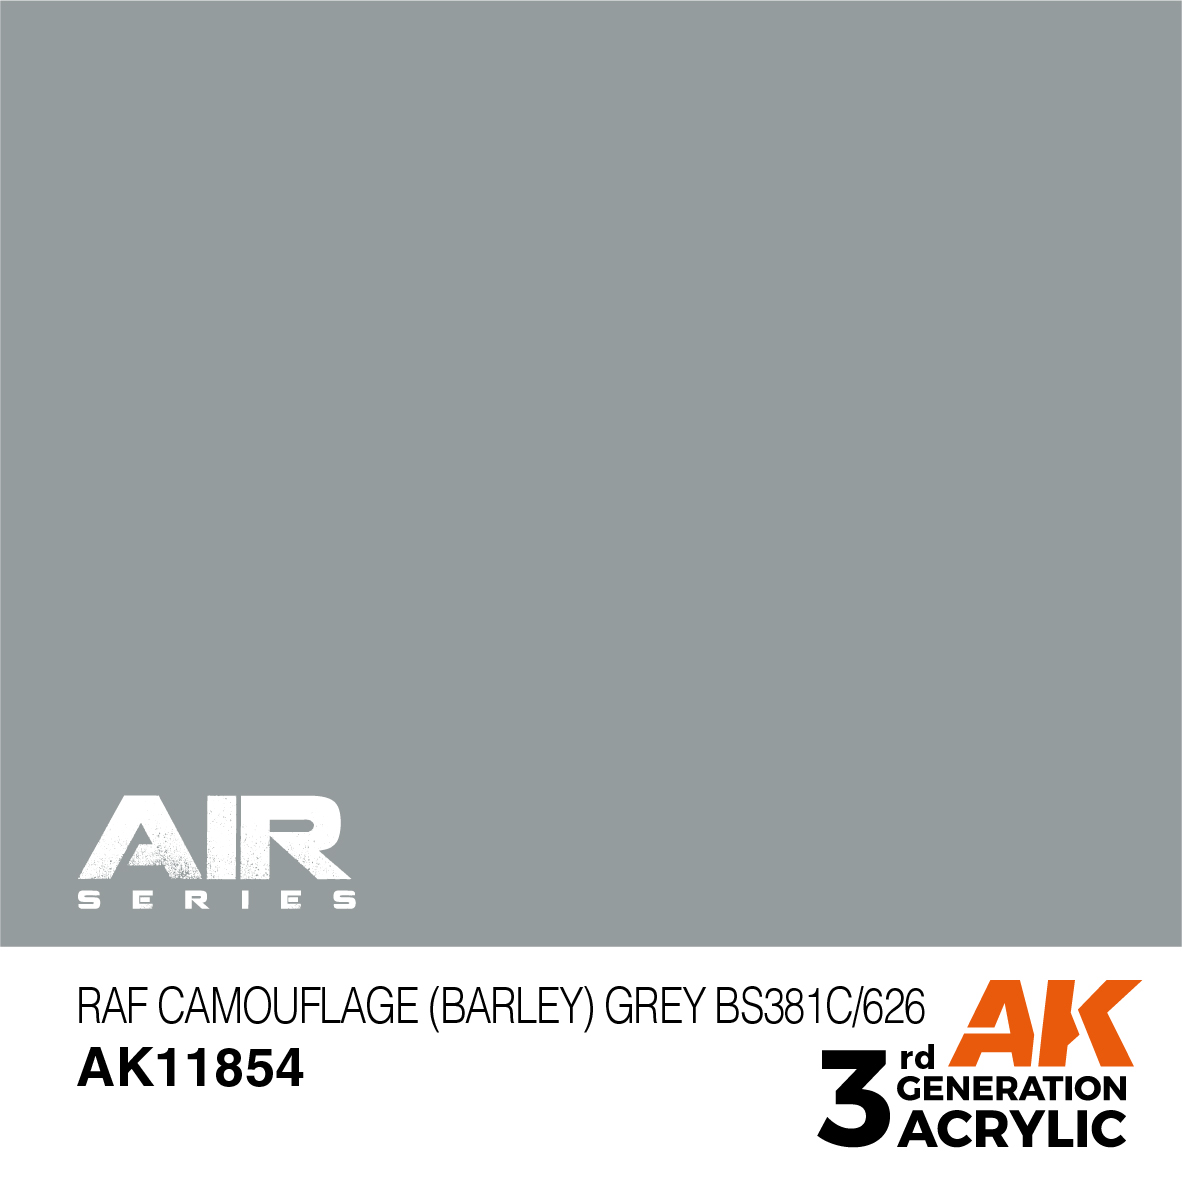 RAF Camouflage (Barley) Grey BS381C/626 – AIR